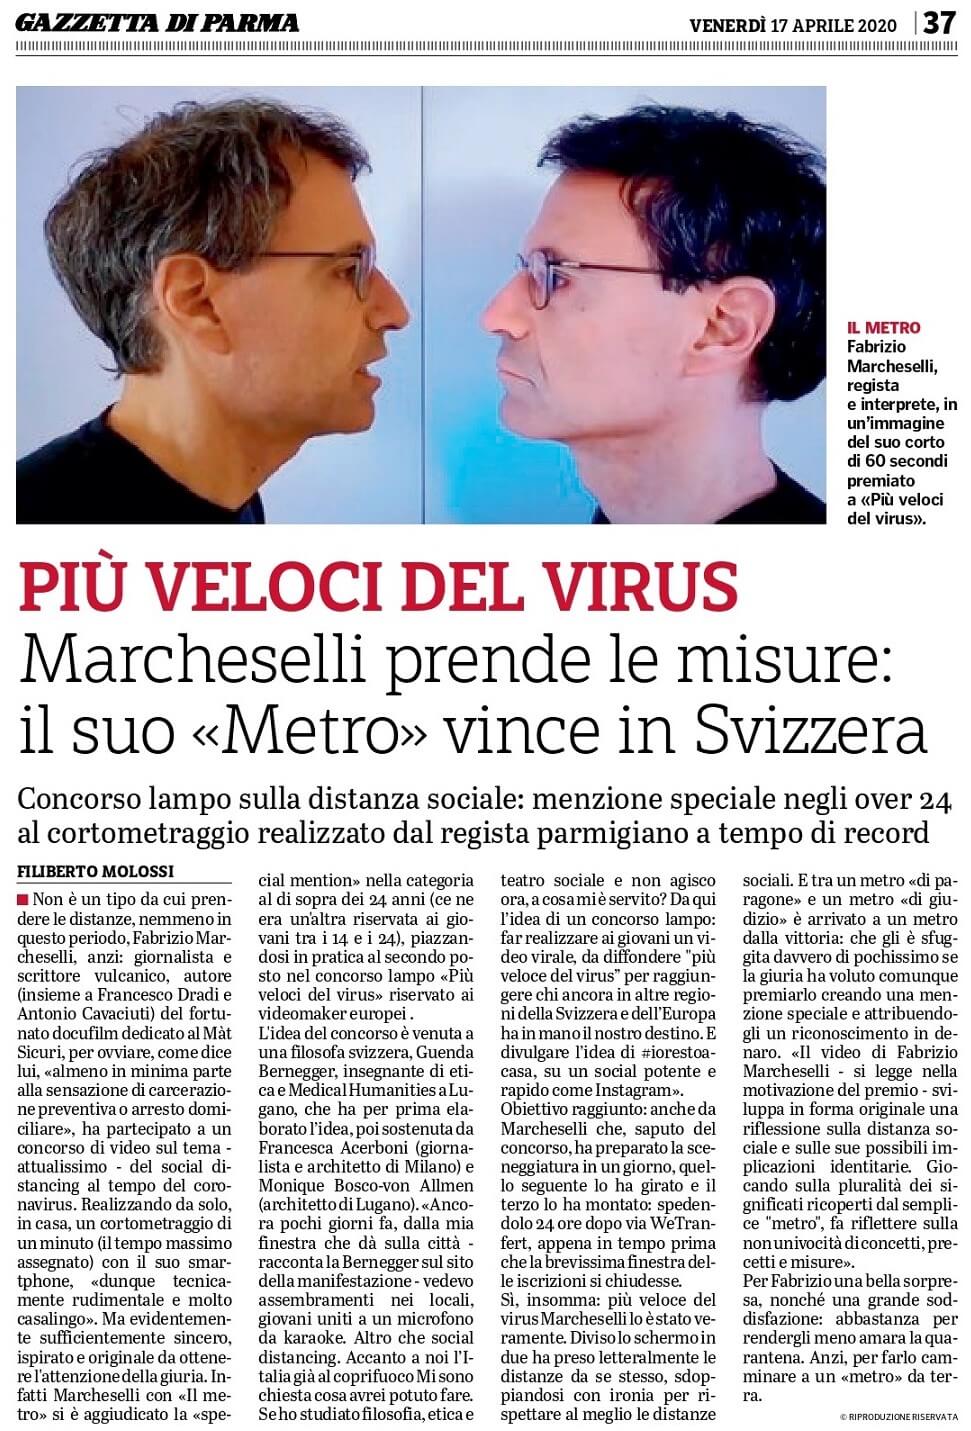 “Il metro”, corto sul Coronavirus premiato a #piuvelocidelvirus in Svizzera: articolo di Filiberto Molossi, Gazzetta di Parma, 17-4-2020